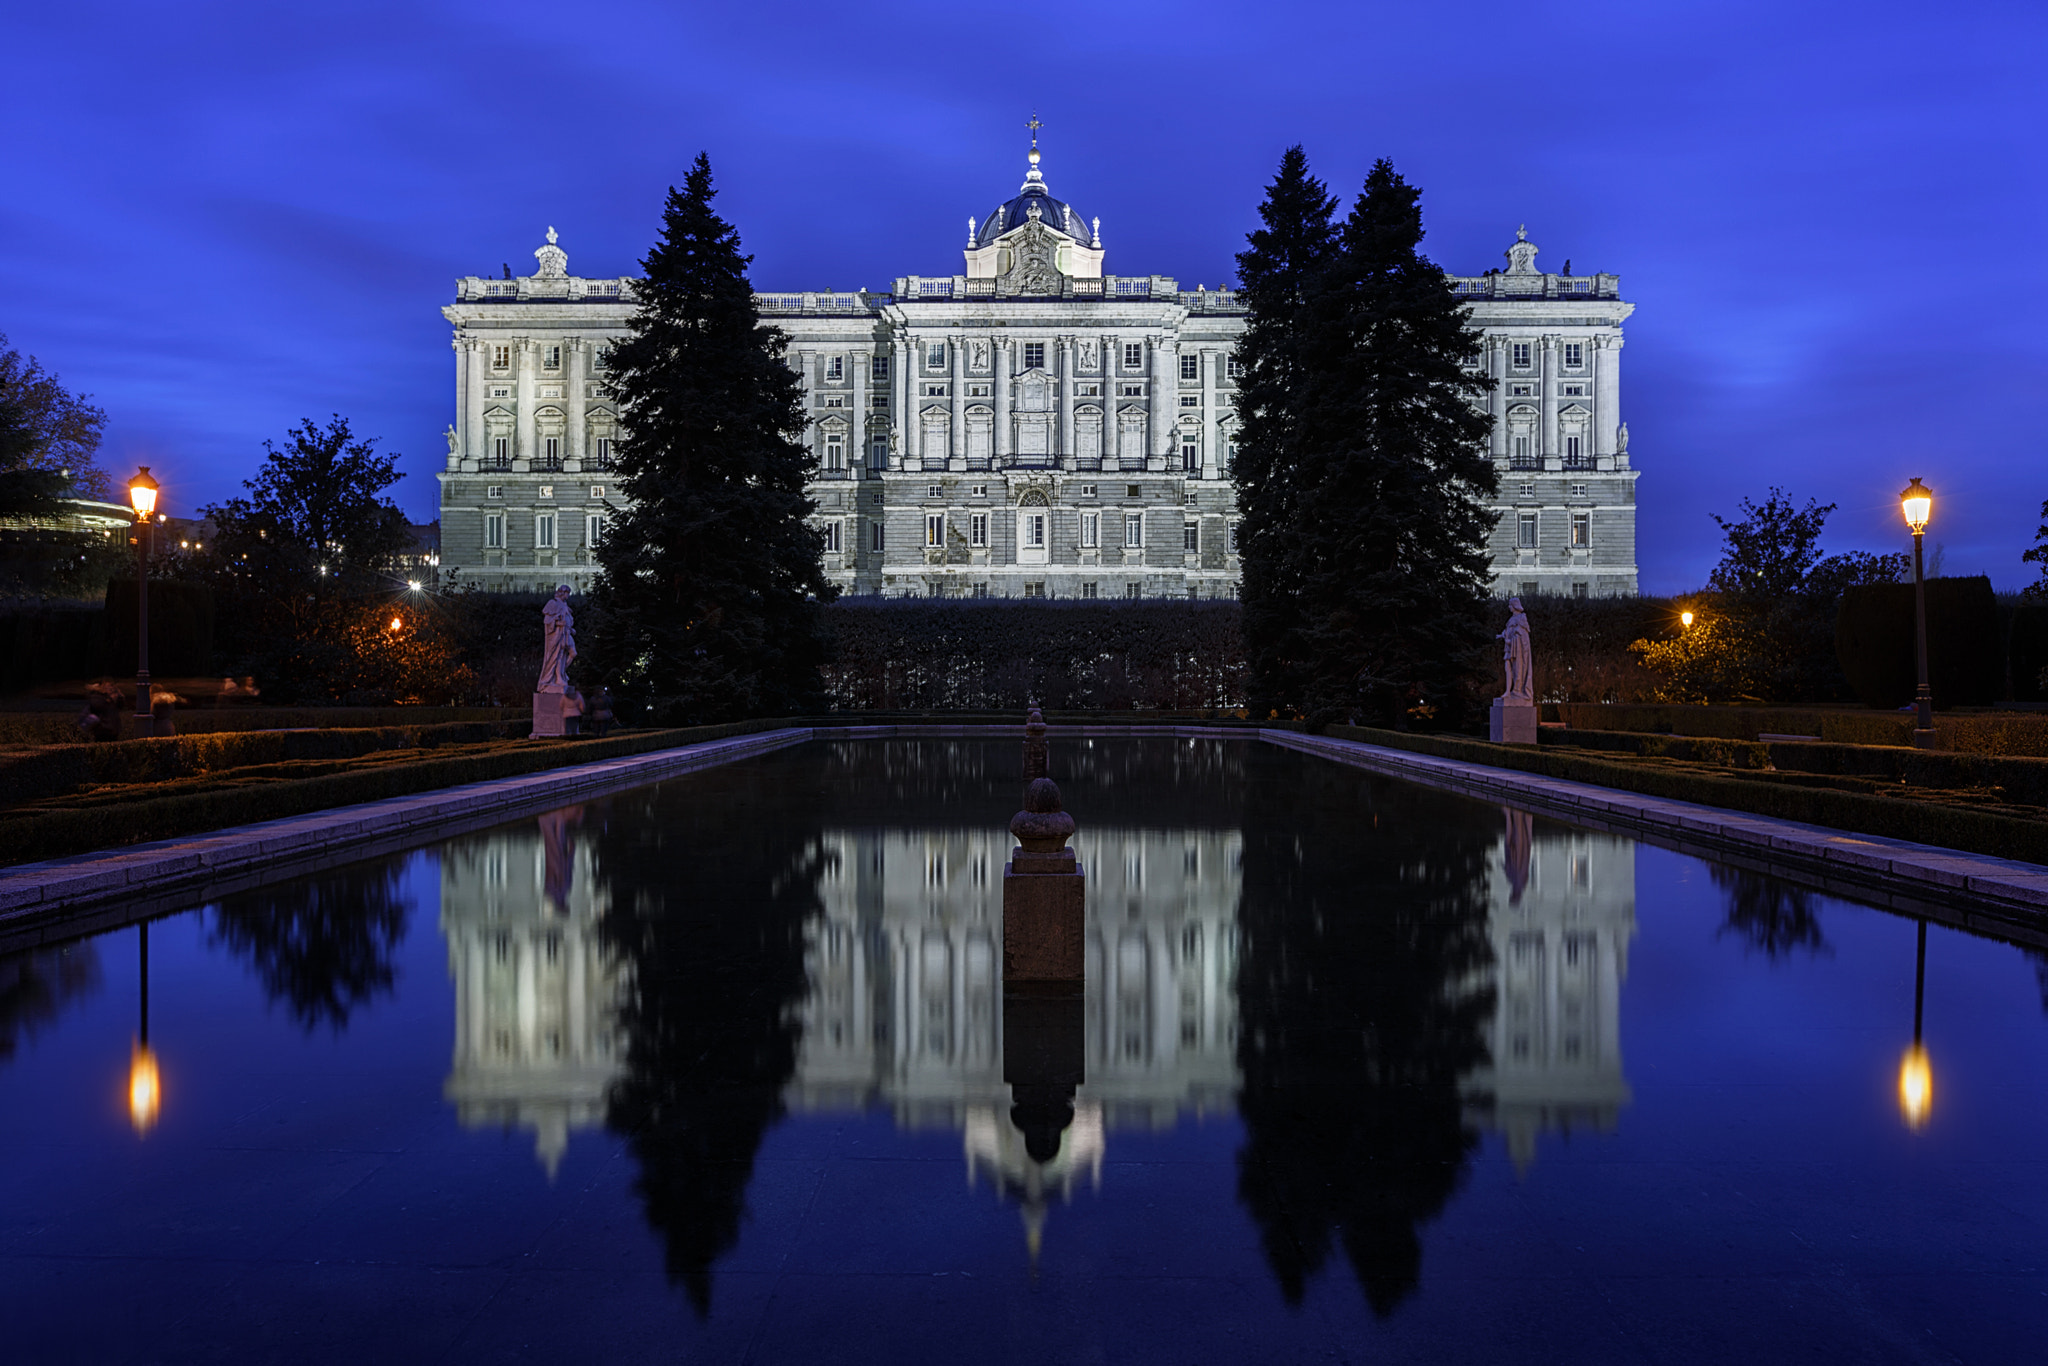 Royal Palace reflections